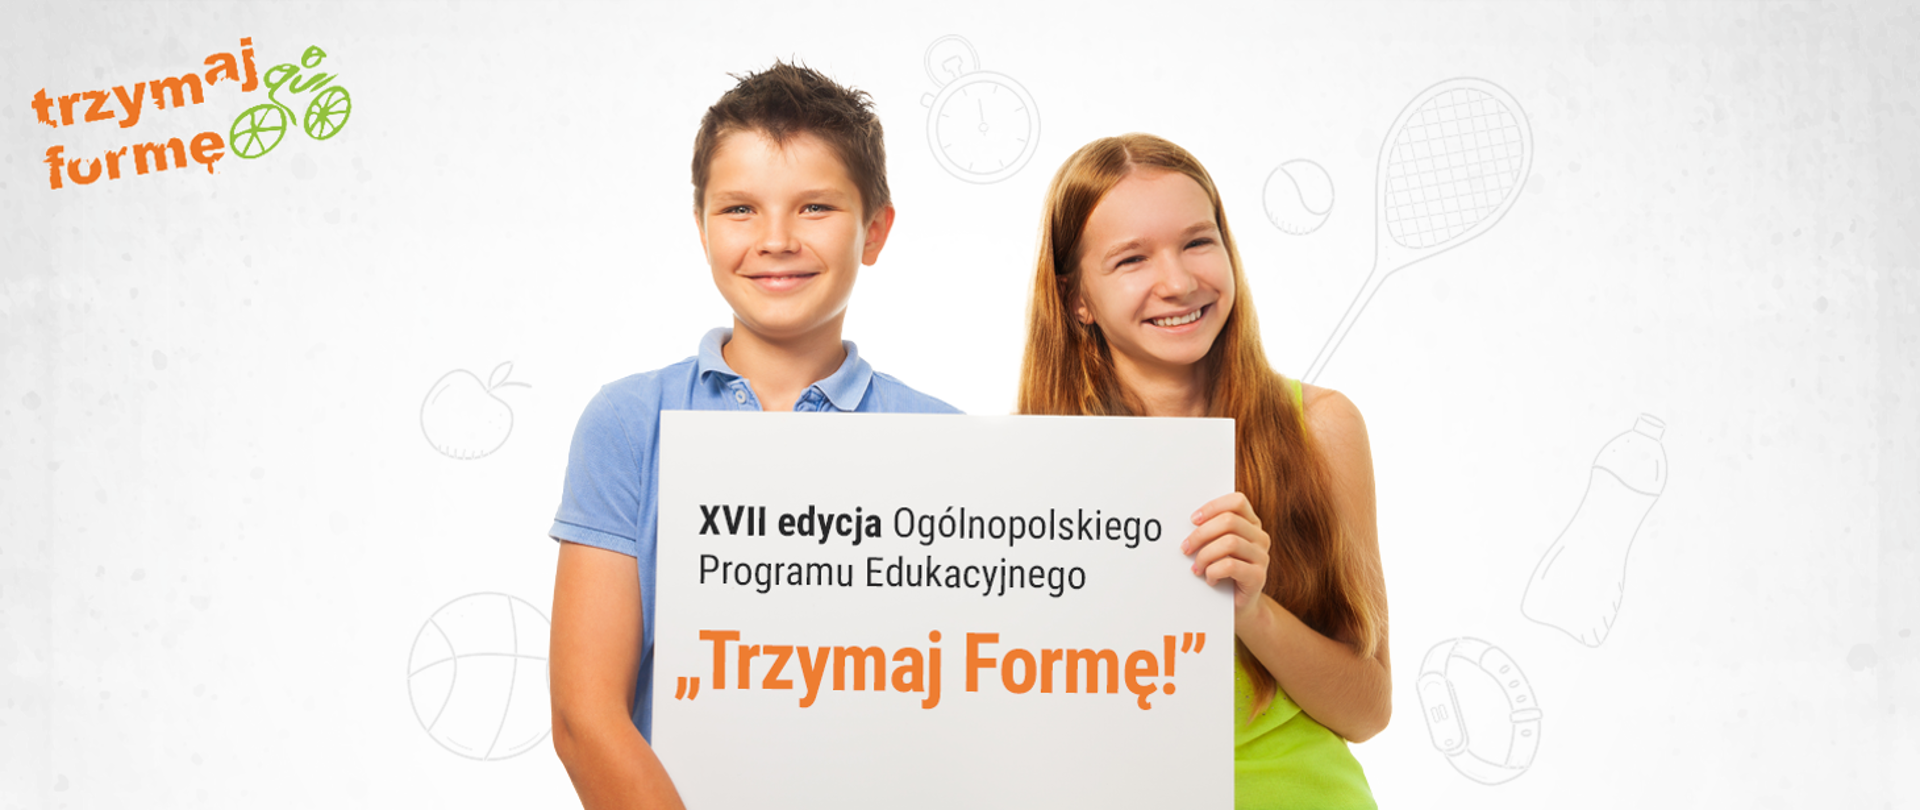 Dwójka dzieci - chłopiec i dziewczynka trzymają tablicę informacyjną o treści: XVII edycja Ogólnopolskiego Programu Edukacyjnego "Trzymaj Formę". W lewym górnym rogu logo graficzne programu - pomarańczowy napis "Trzymaj Formę" z zielonym rowerem